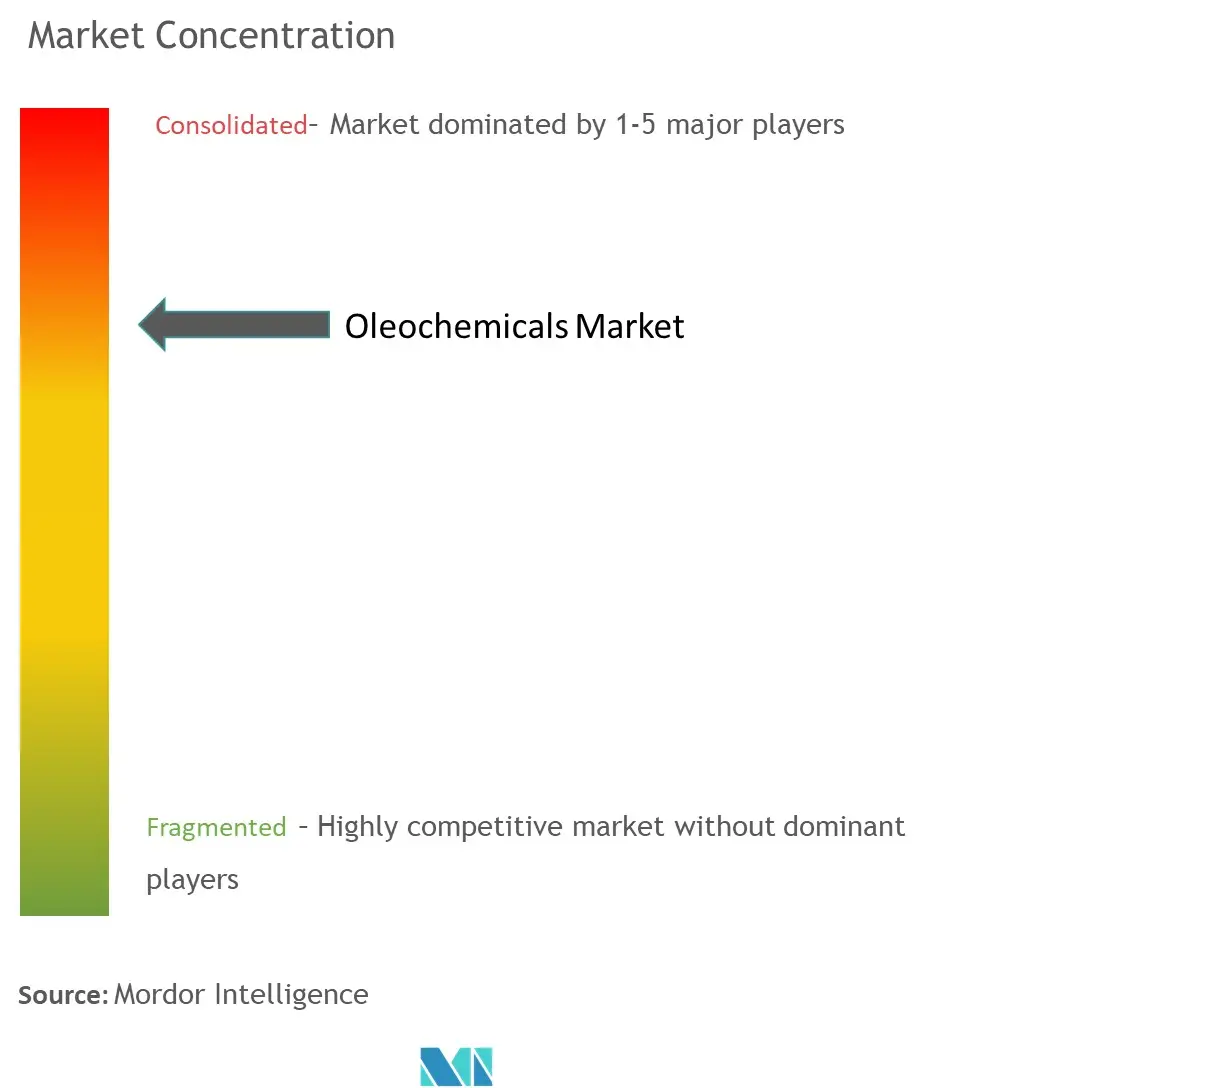 Oleochemicals Market Concentration